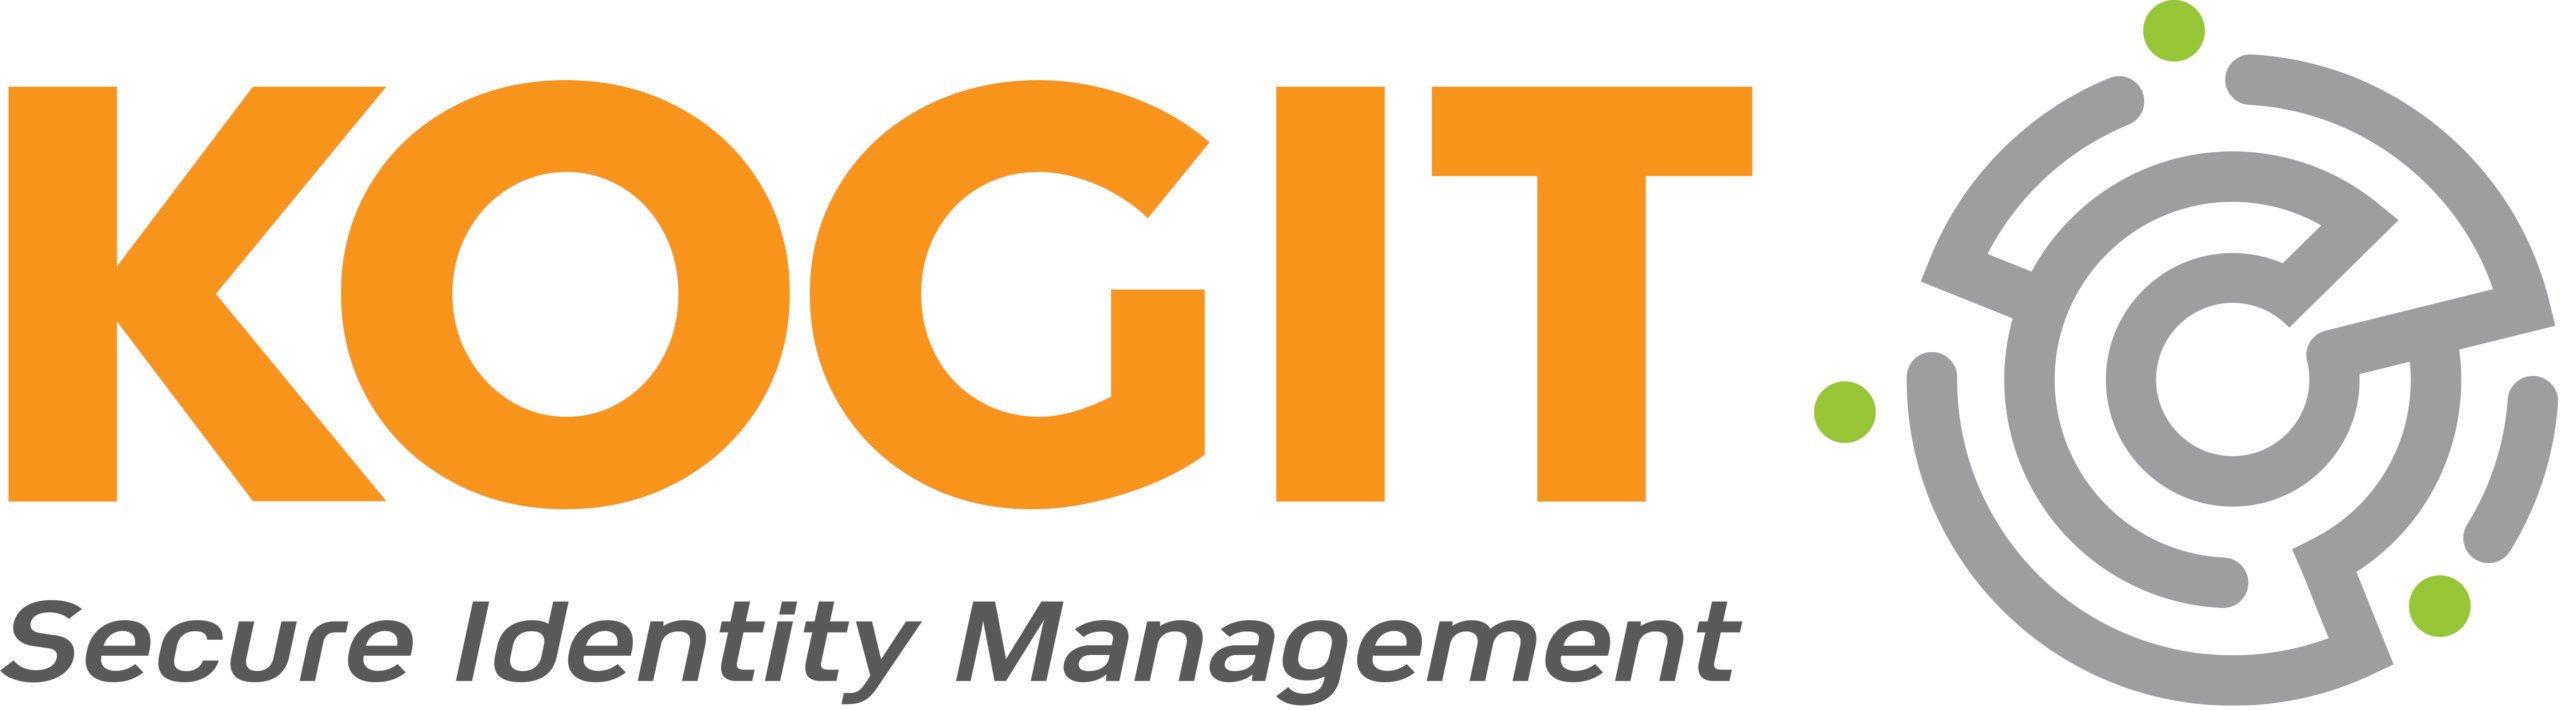 KOGIT_logo